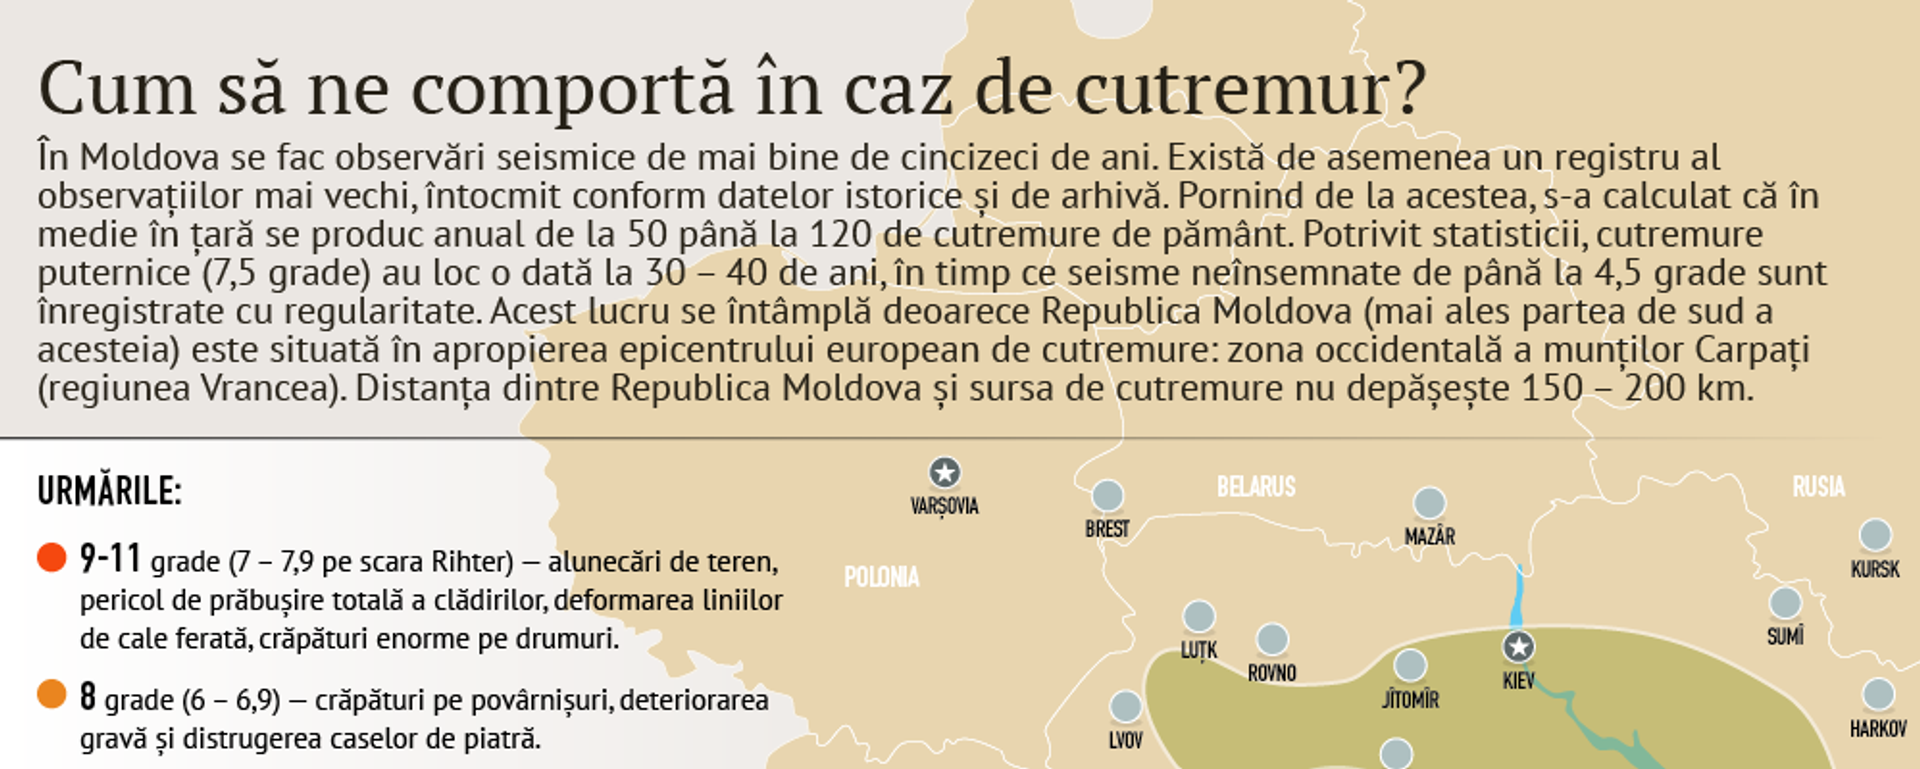 Cum să ne comportă în caz de cutremur? - Sputnik Moldova, 1920, 28.12.2016